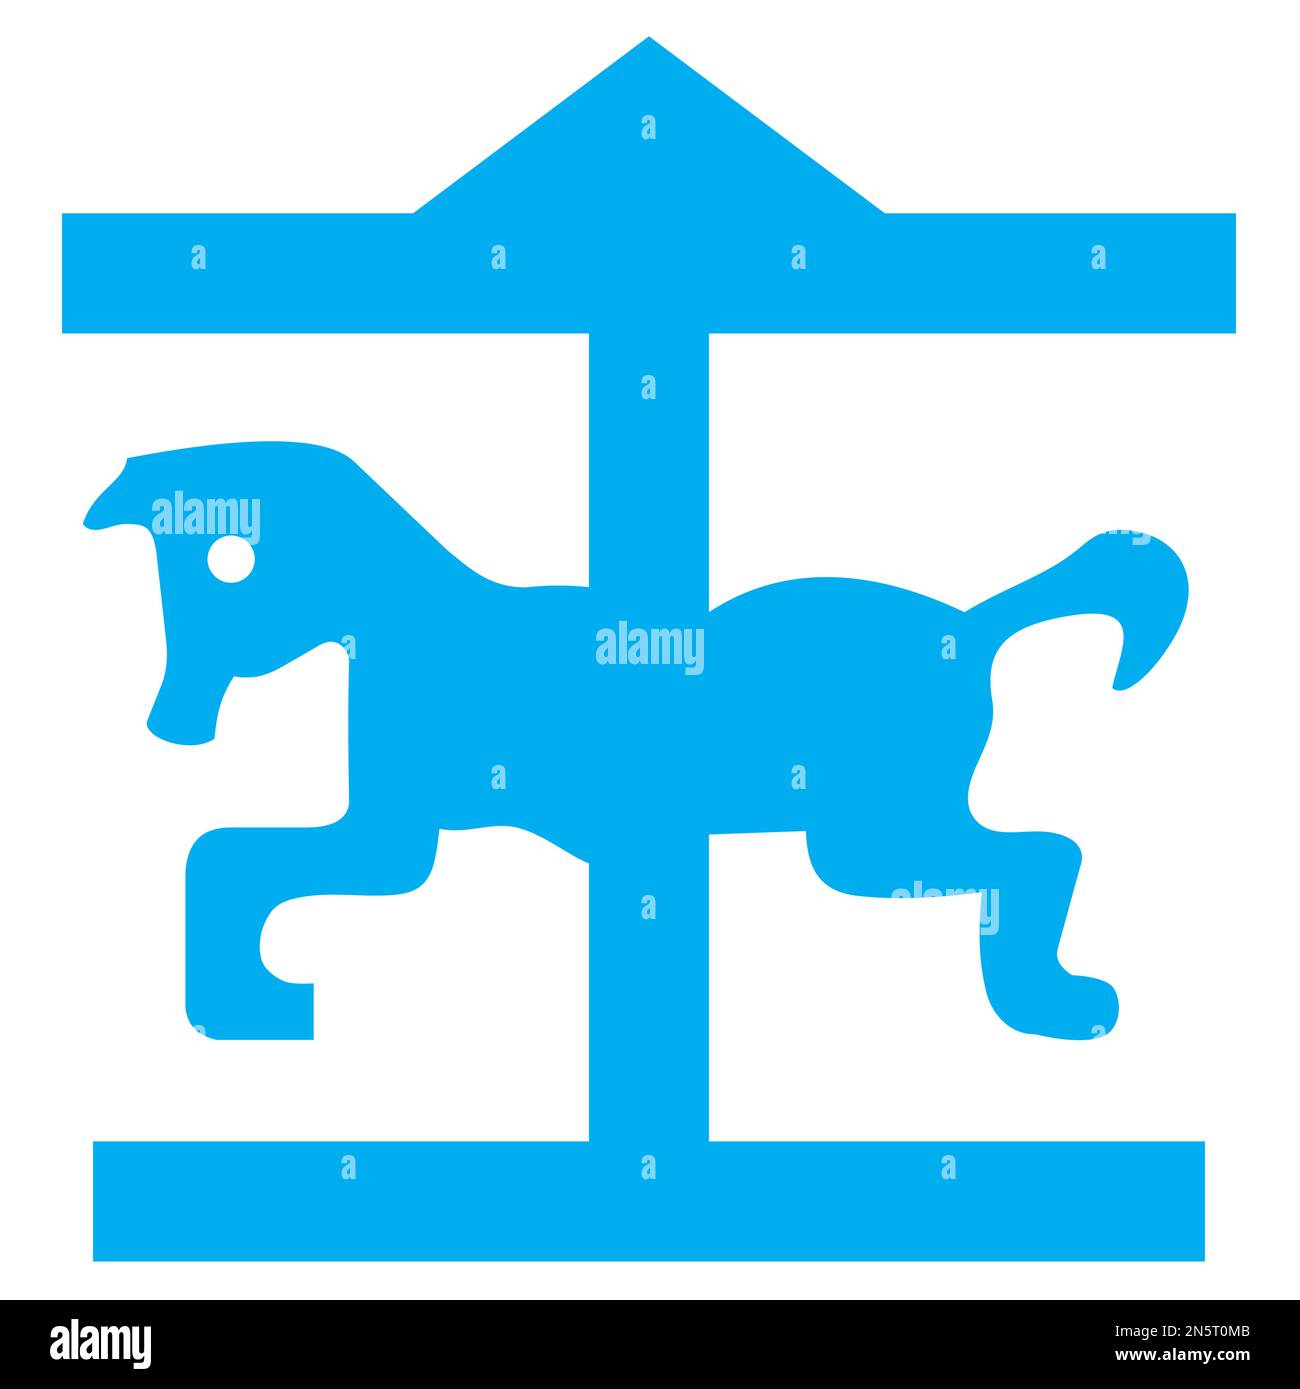 Blau-weiße Vektorgrafik eines Kartensymbols für einen Freizeitpark. Es besteht aus einer blauen Silhouette eines Pferdes auf einem Karussell Stock Vektor